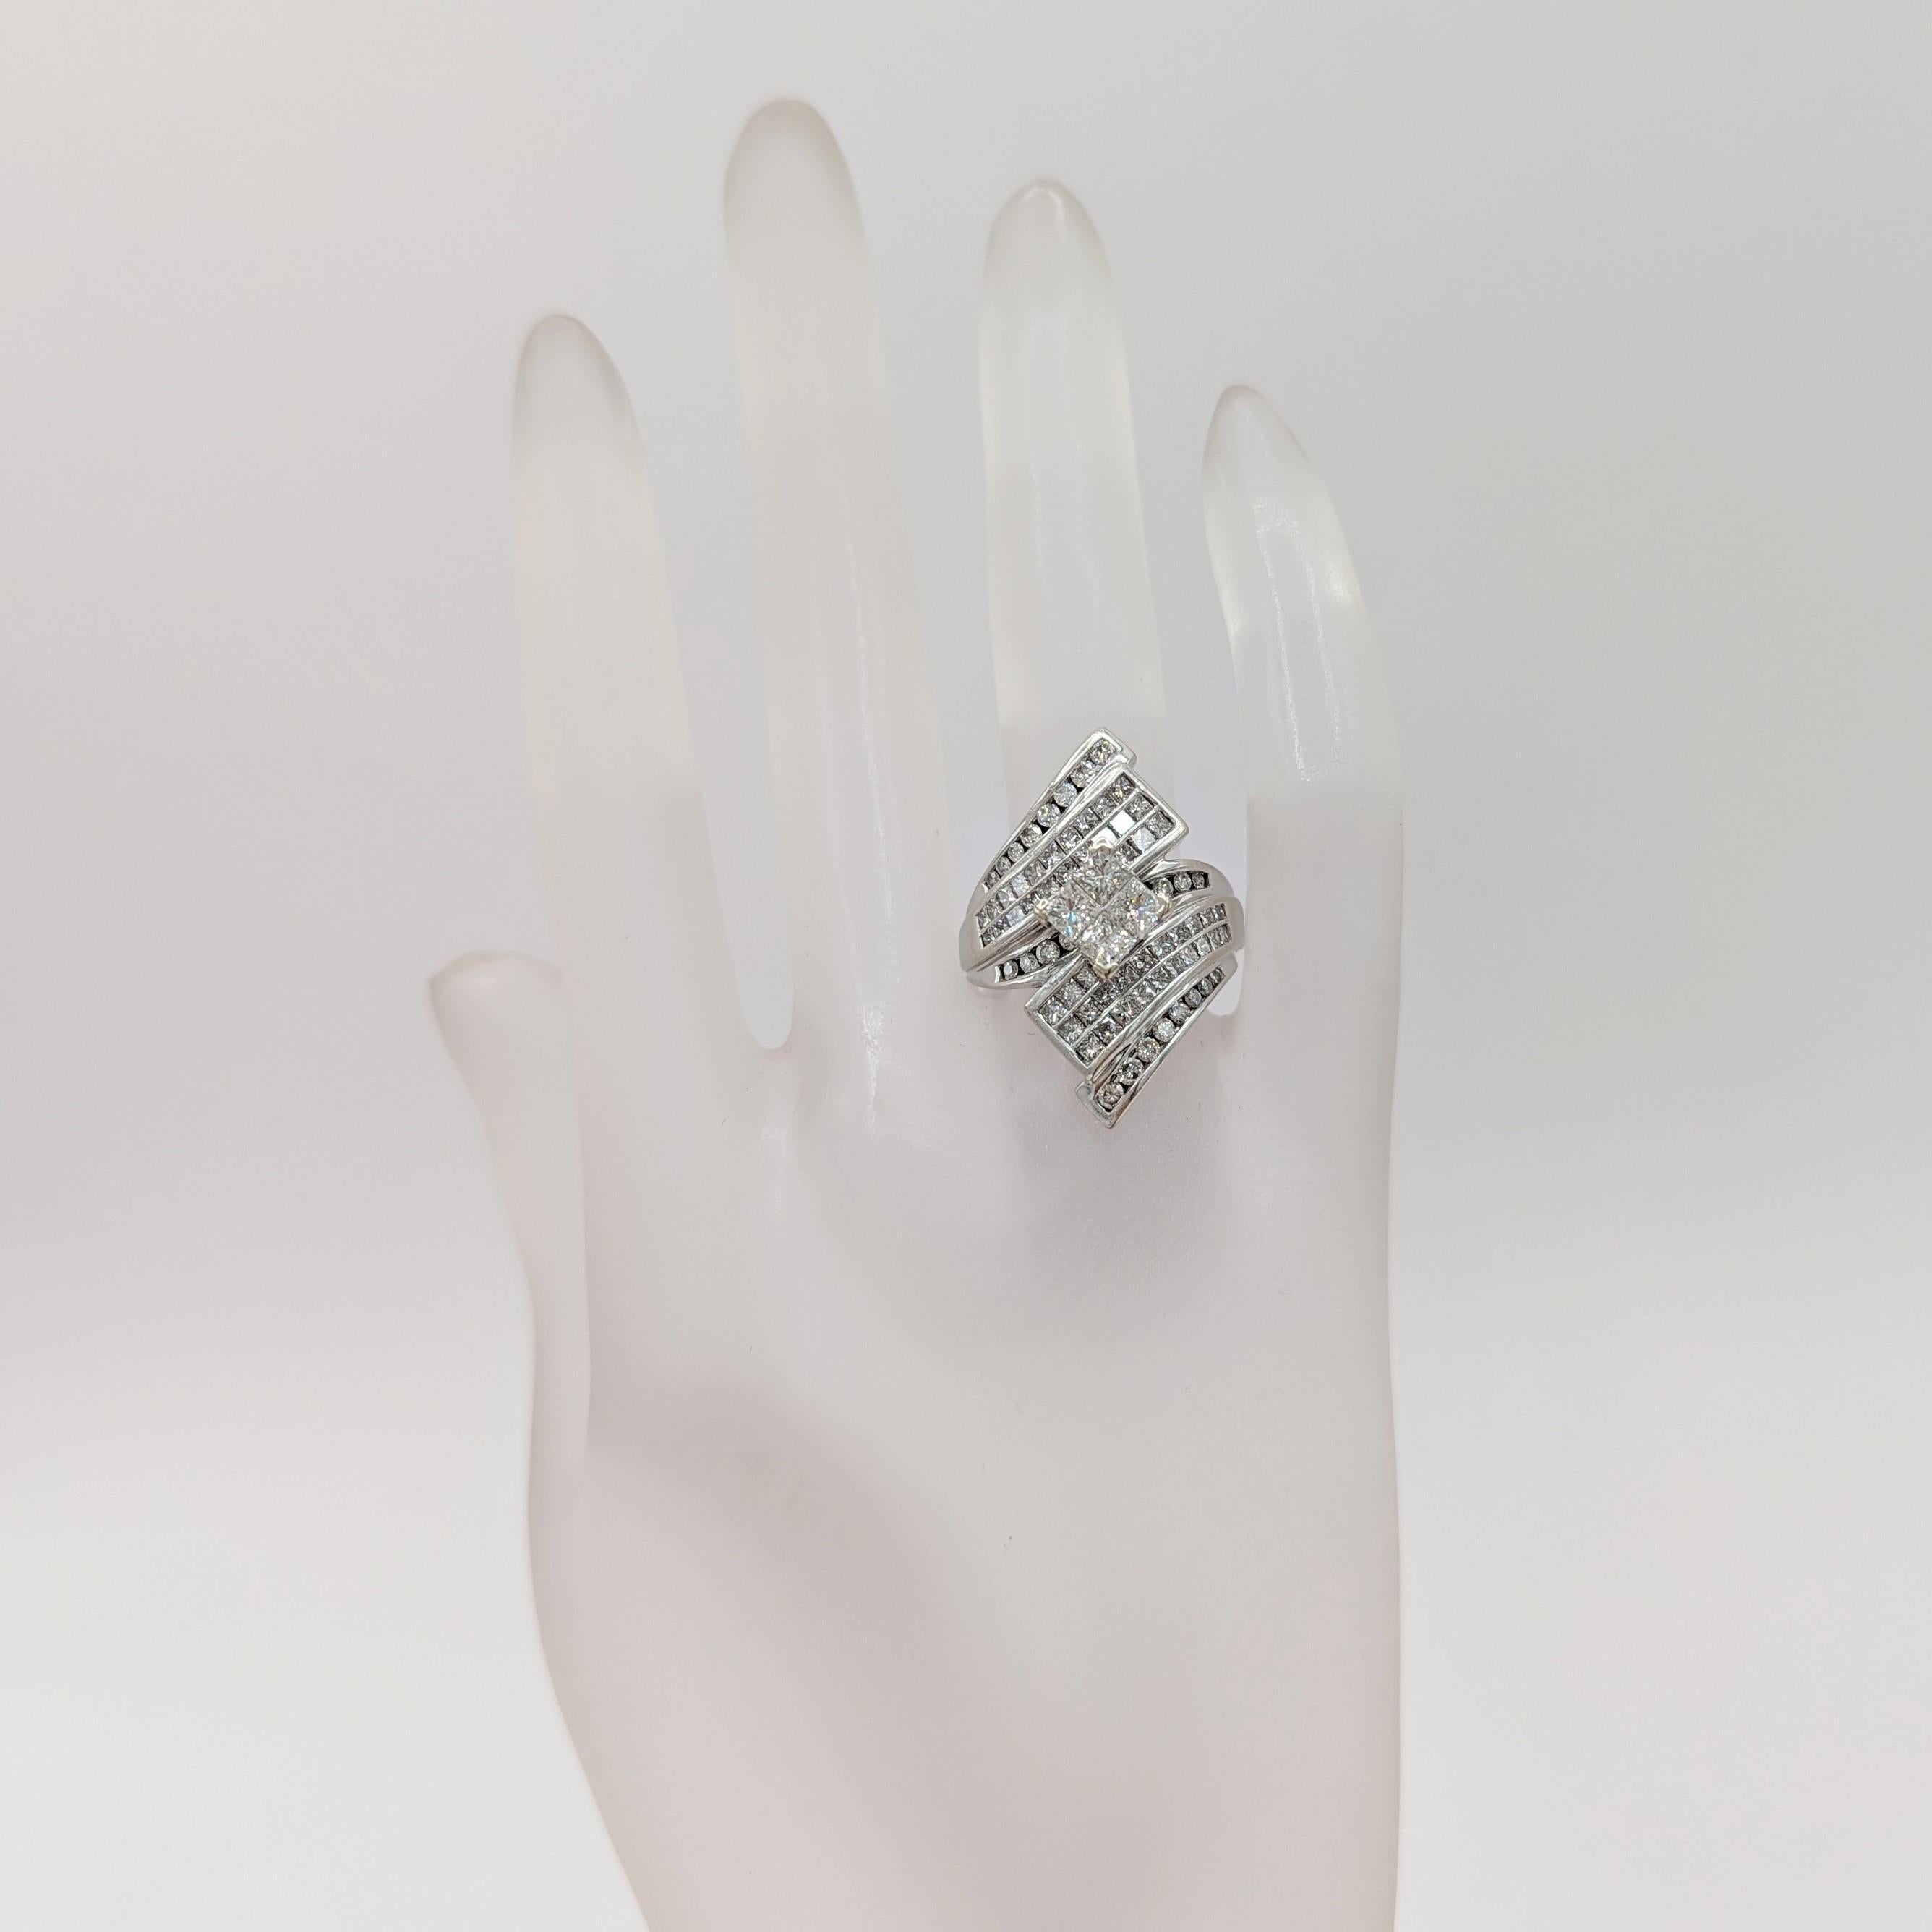 Magnifique diamant blanc de 1.25 ct. en forme de carré et de rond.  Fabriqué à la main en or blanc 14k.  Bague taille 7.25.